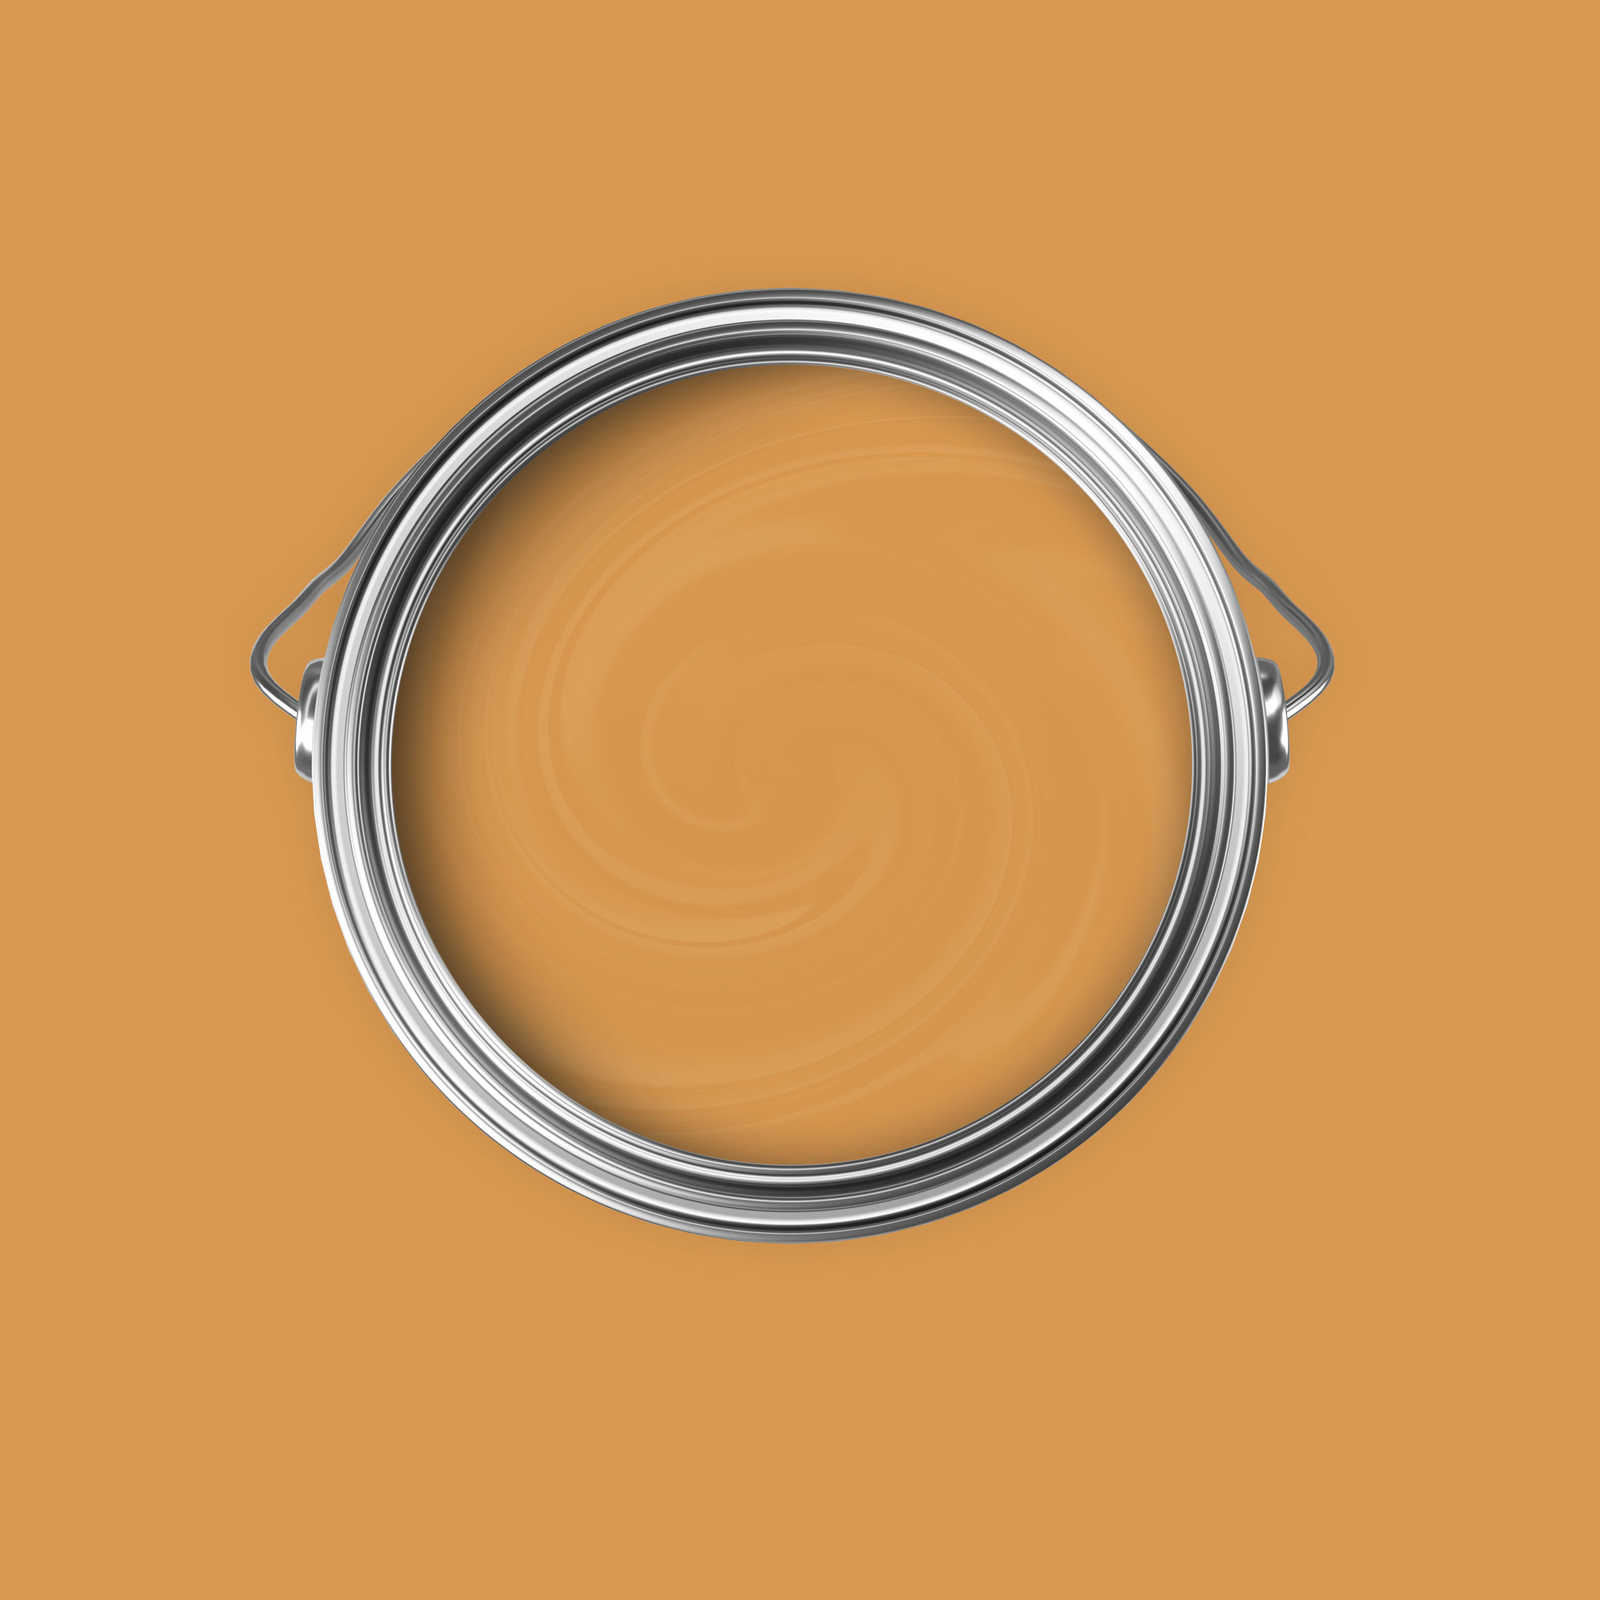             Premium Muurverf Warm Oranje »Beige Orange/Sassy Saffron« NW813 – 5 liter
        